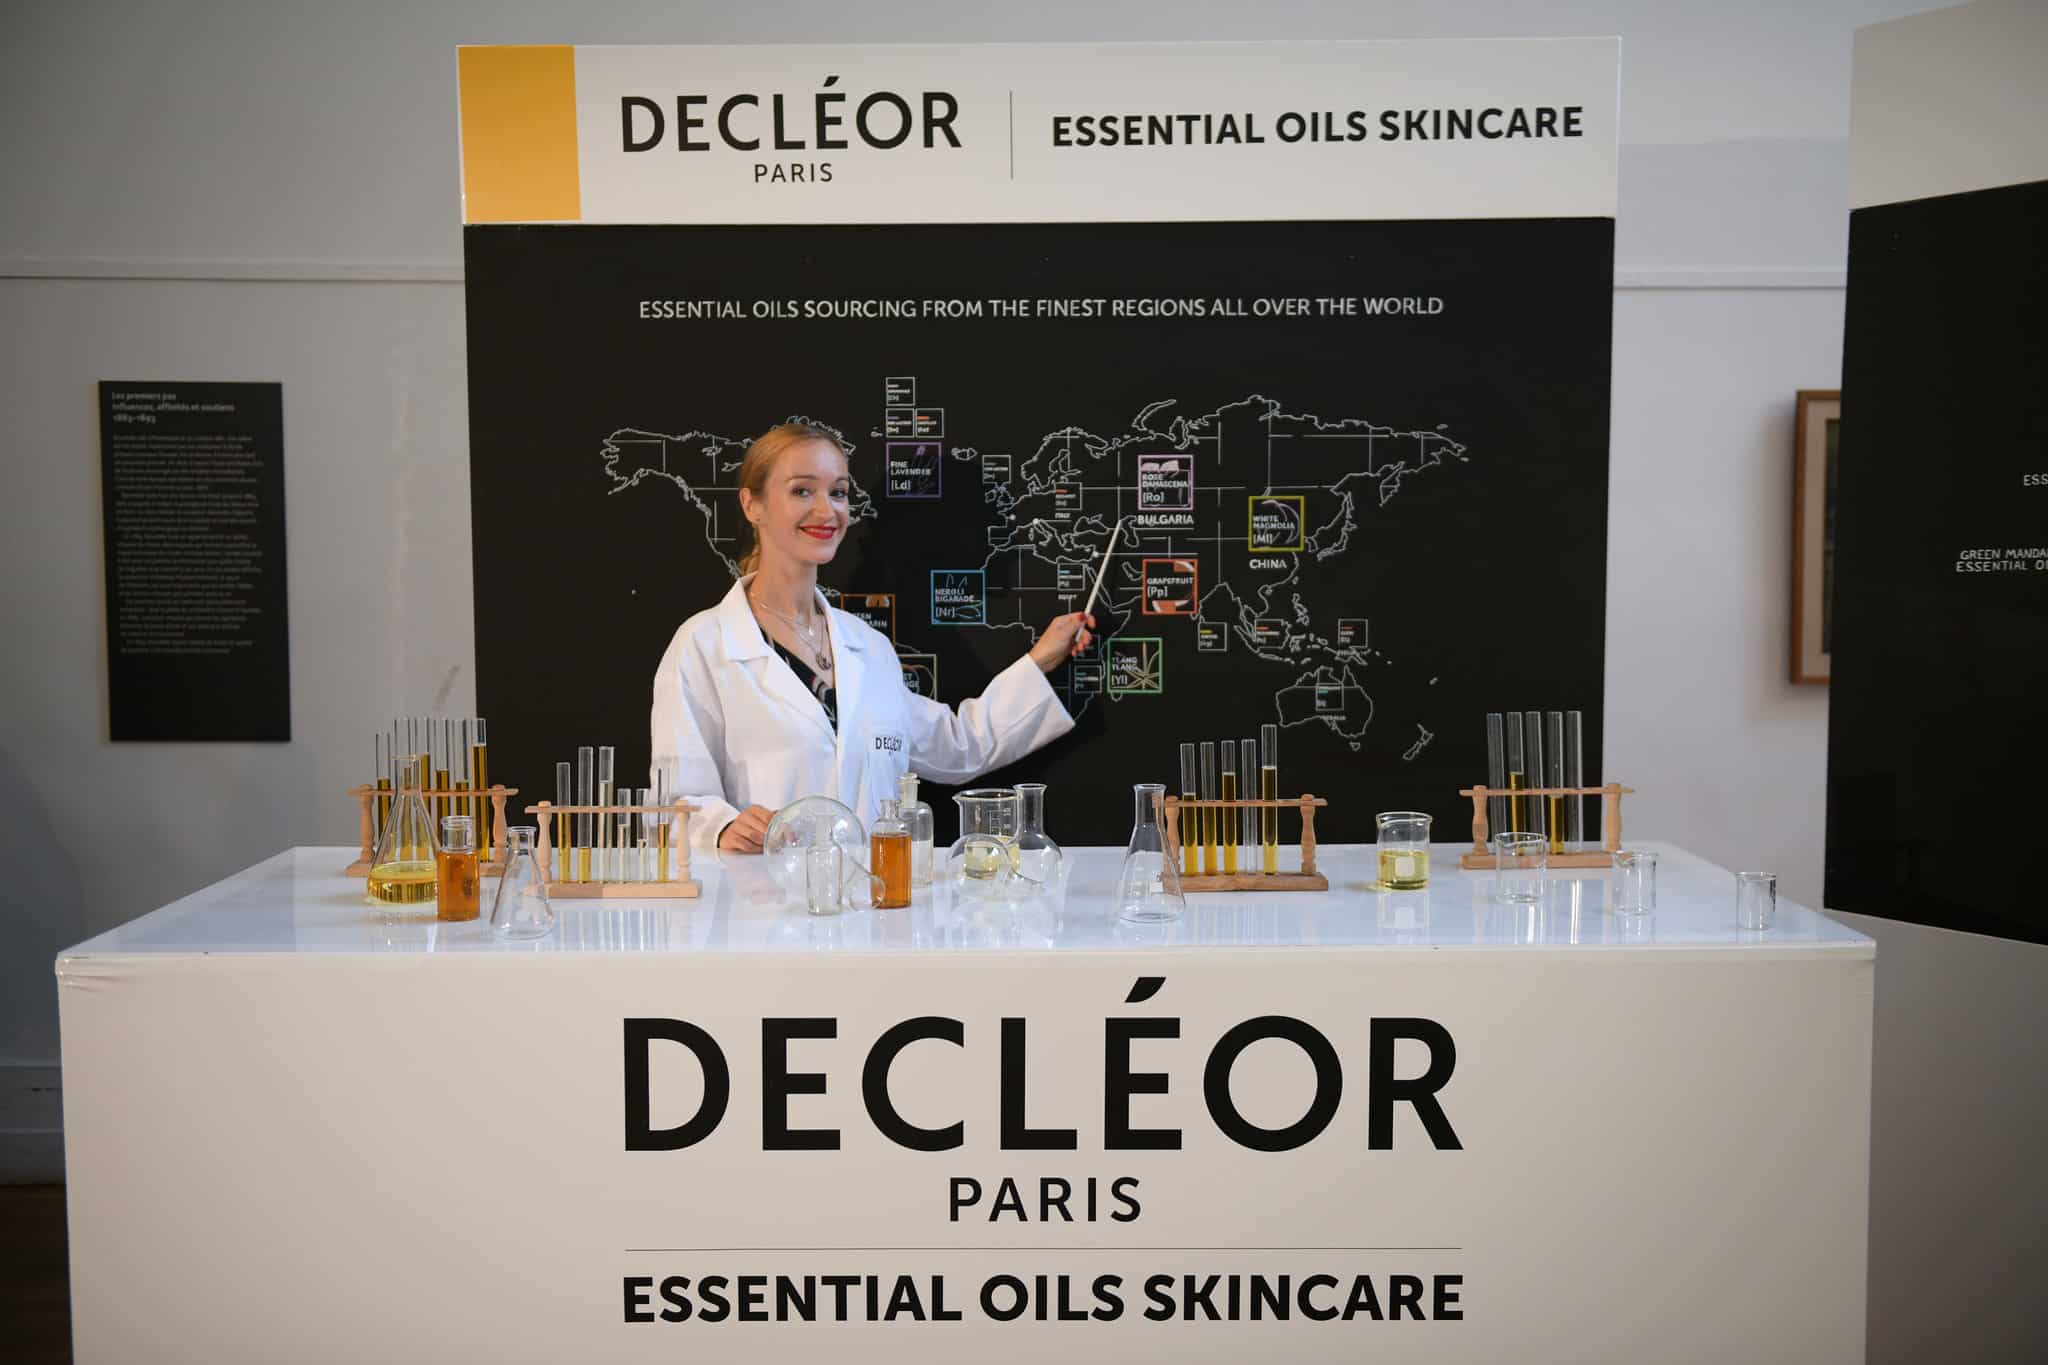 musée bourdelle essential oil skincare tube a essais lancement de produits huile aromessence l’oréal decléor paris france agence wato we are the oracle evenementiel event